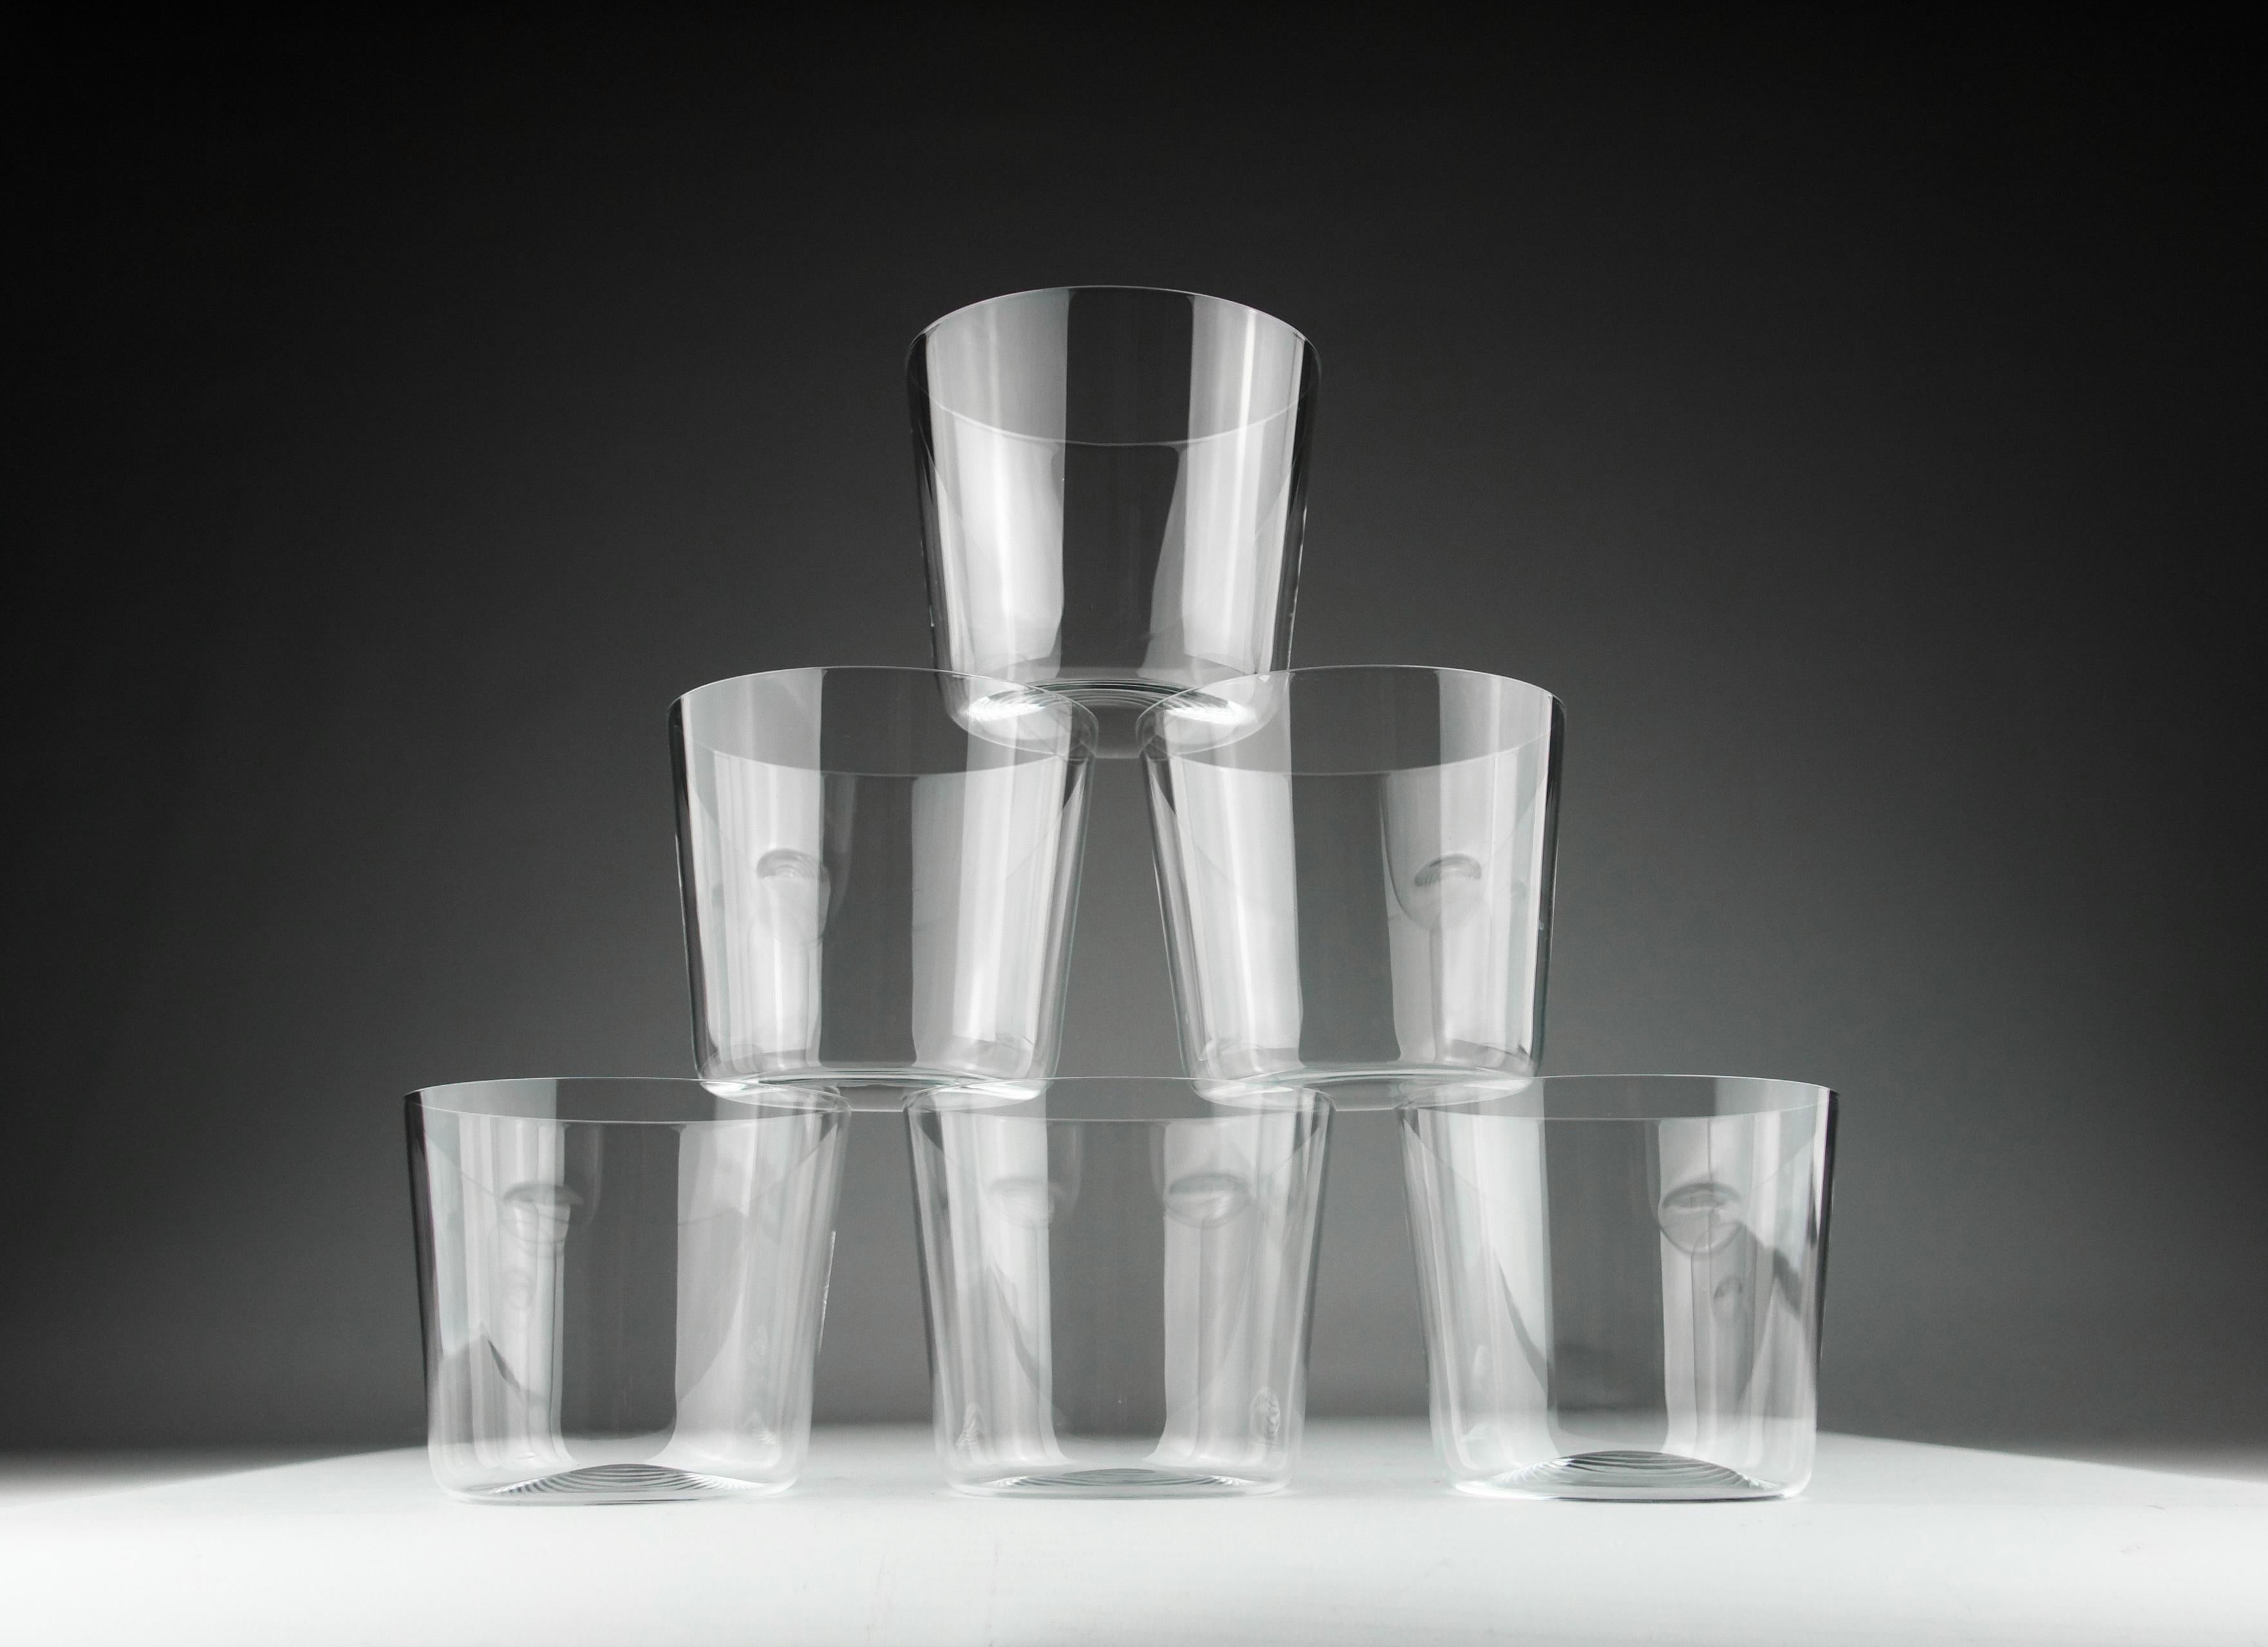 Six verres à eau en cristal Sawaya & Moroni d'une grande finesse, Italie vers 2000. Dans leur boîte d'origine, avec un padding renforcé.

Dimensions en cm ( H x D ) : 8,2 x 9,3

Expédition sécurisée.

